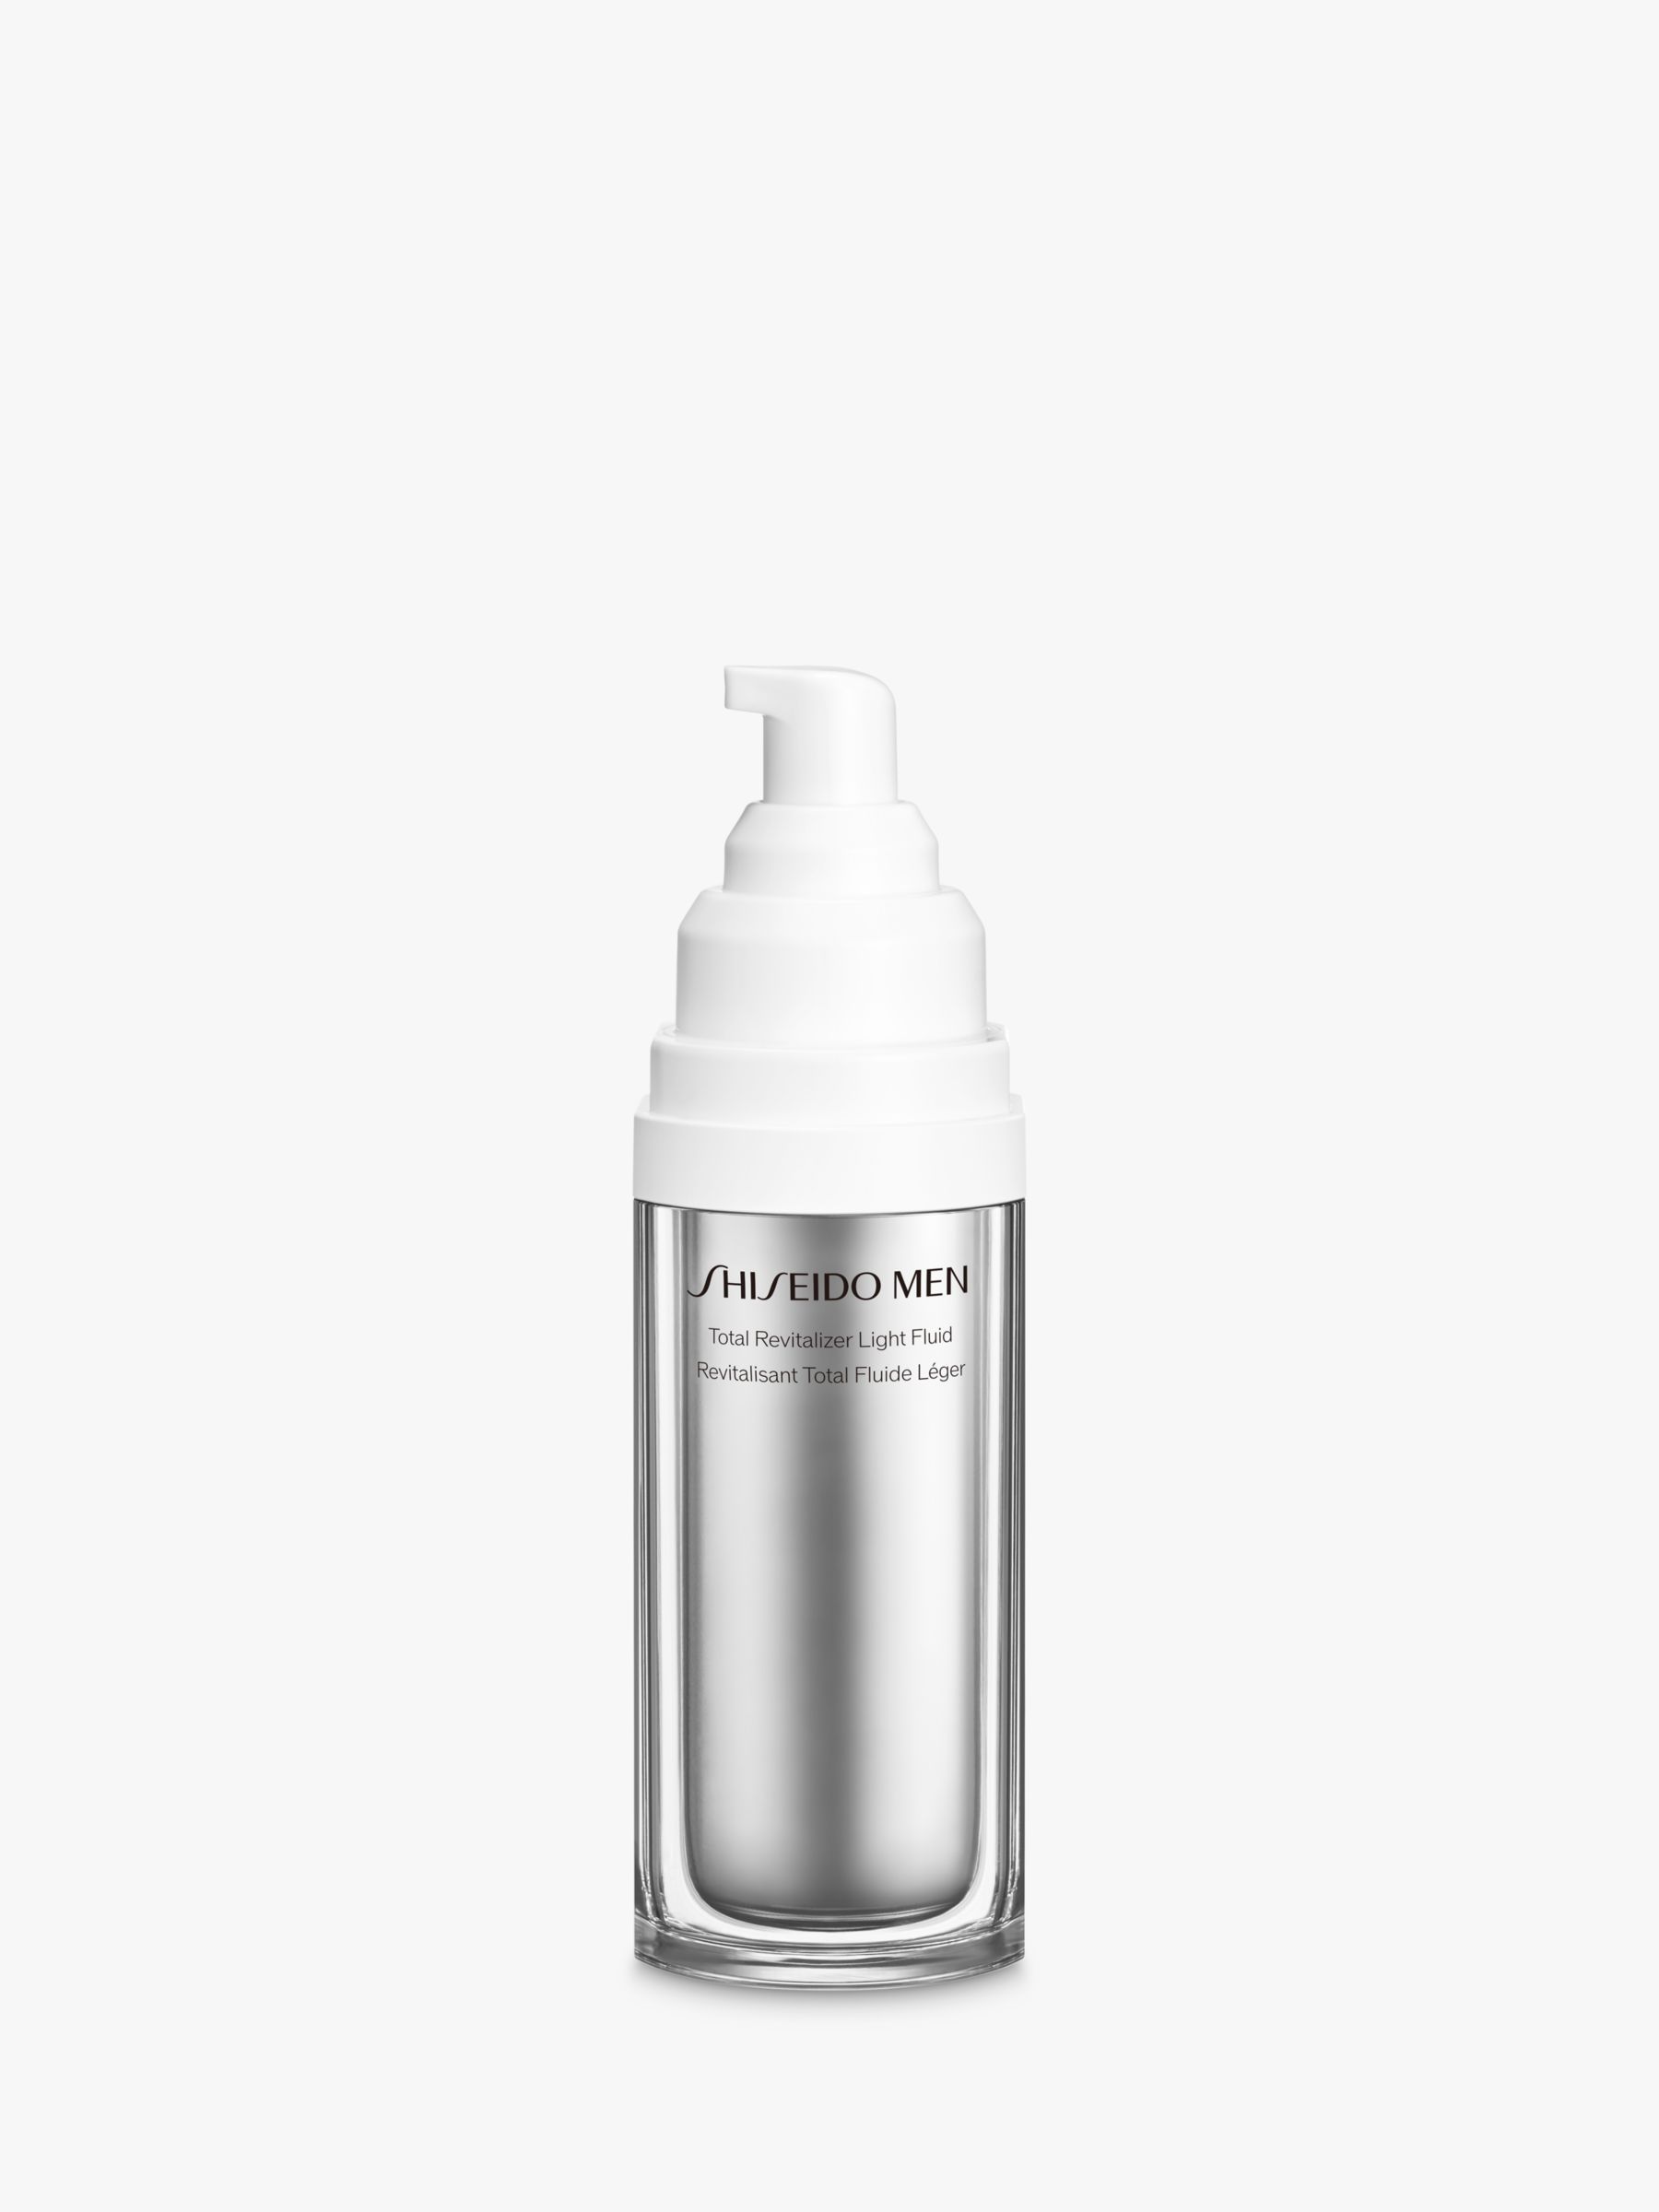 Shiseido Men Total Revitalizer Light Fluid, 70ml 2